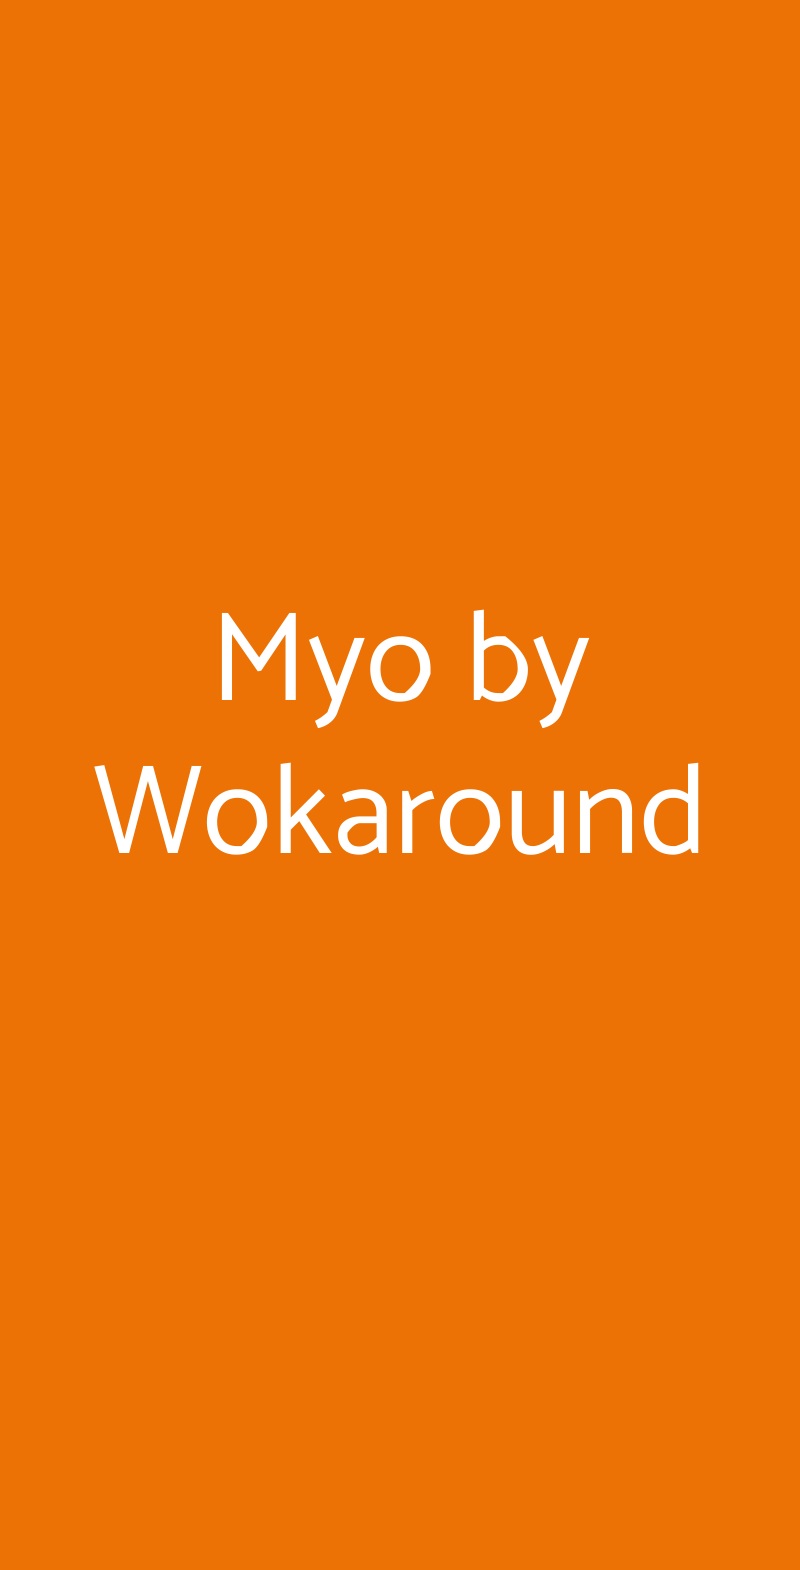 Myo by Wokaround Milano menù 1 pagina